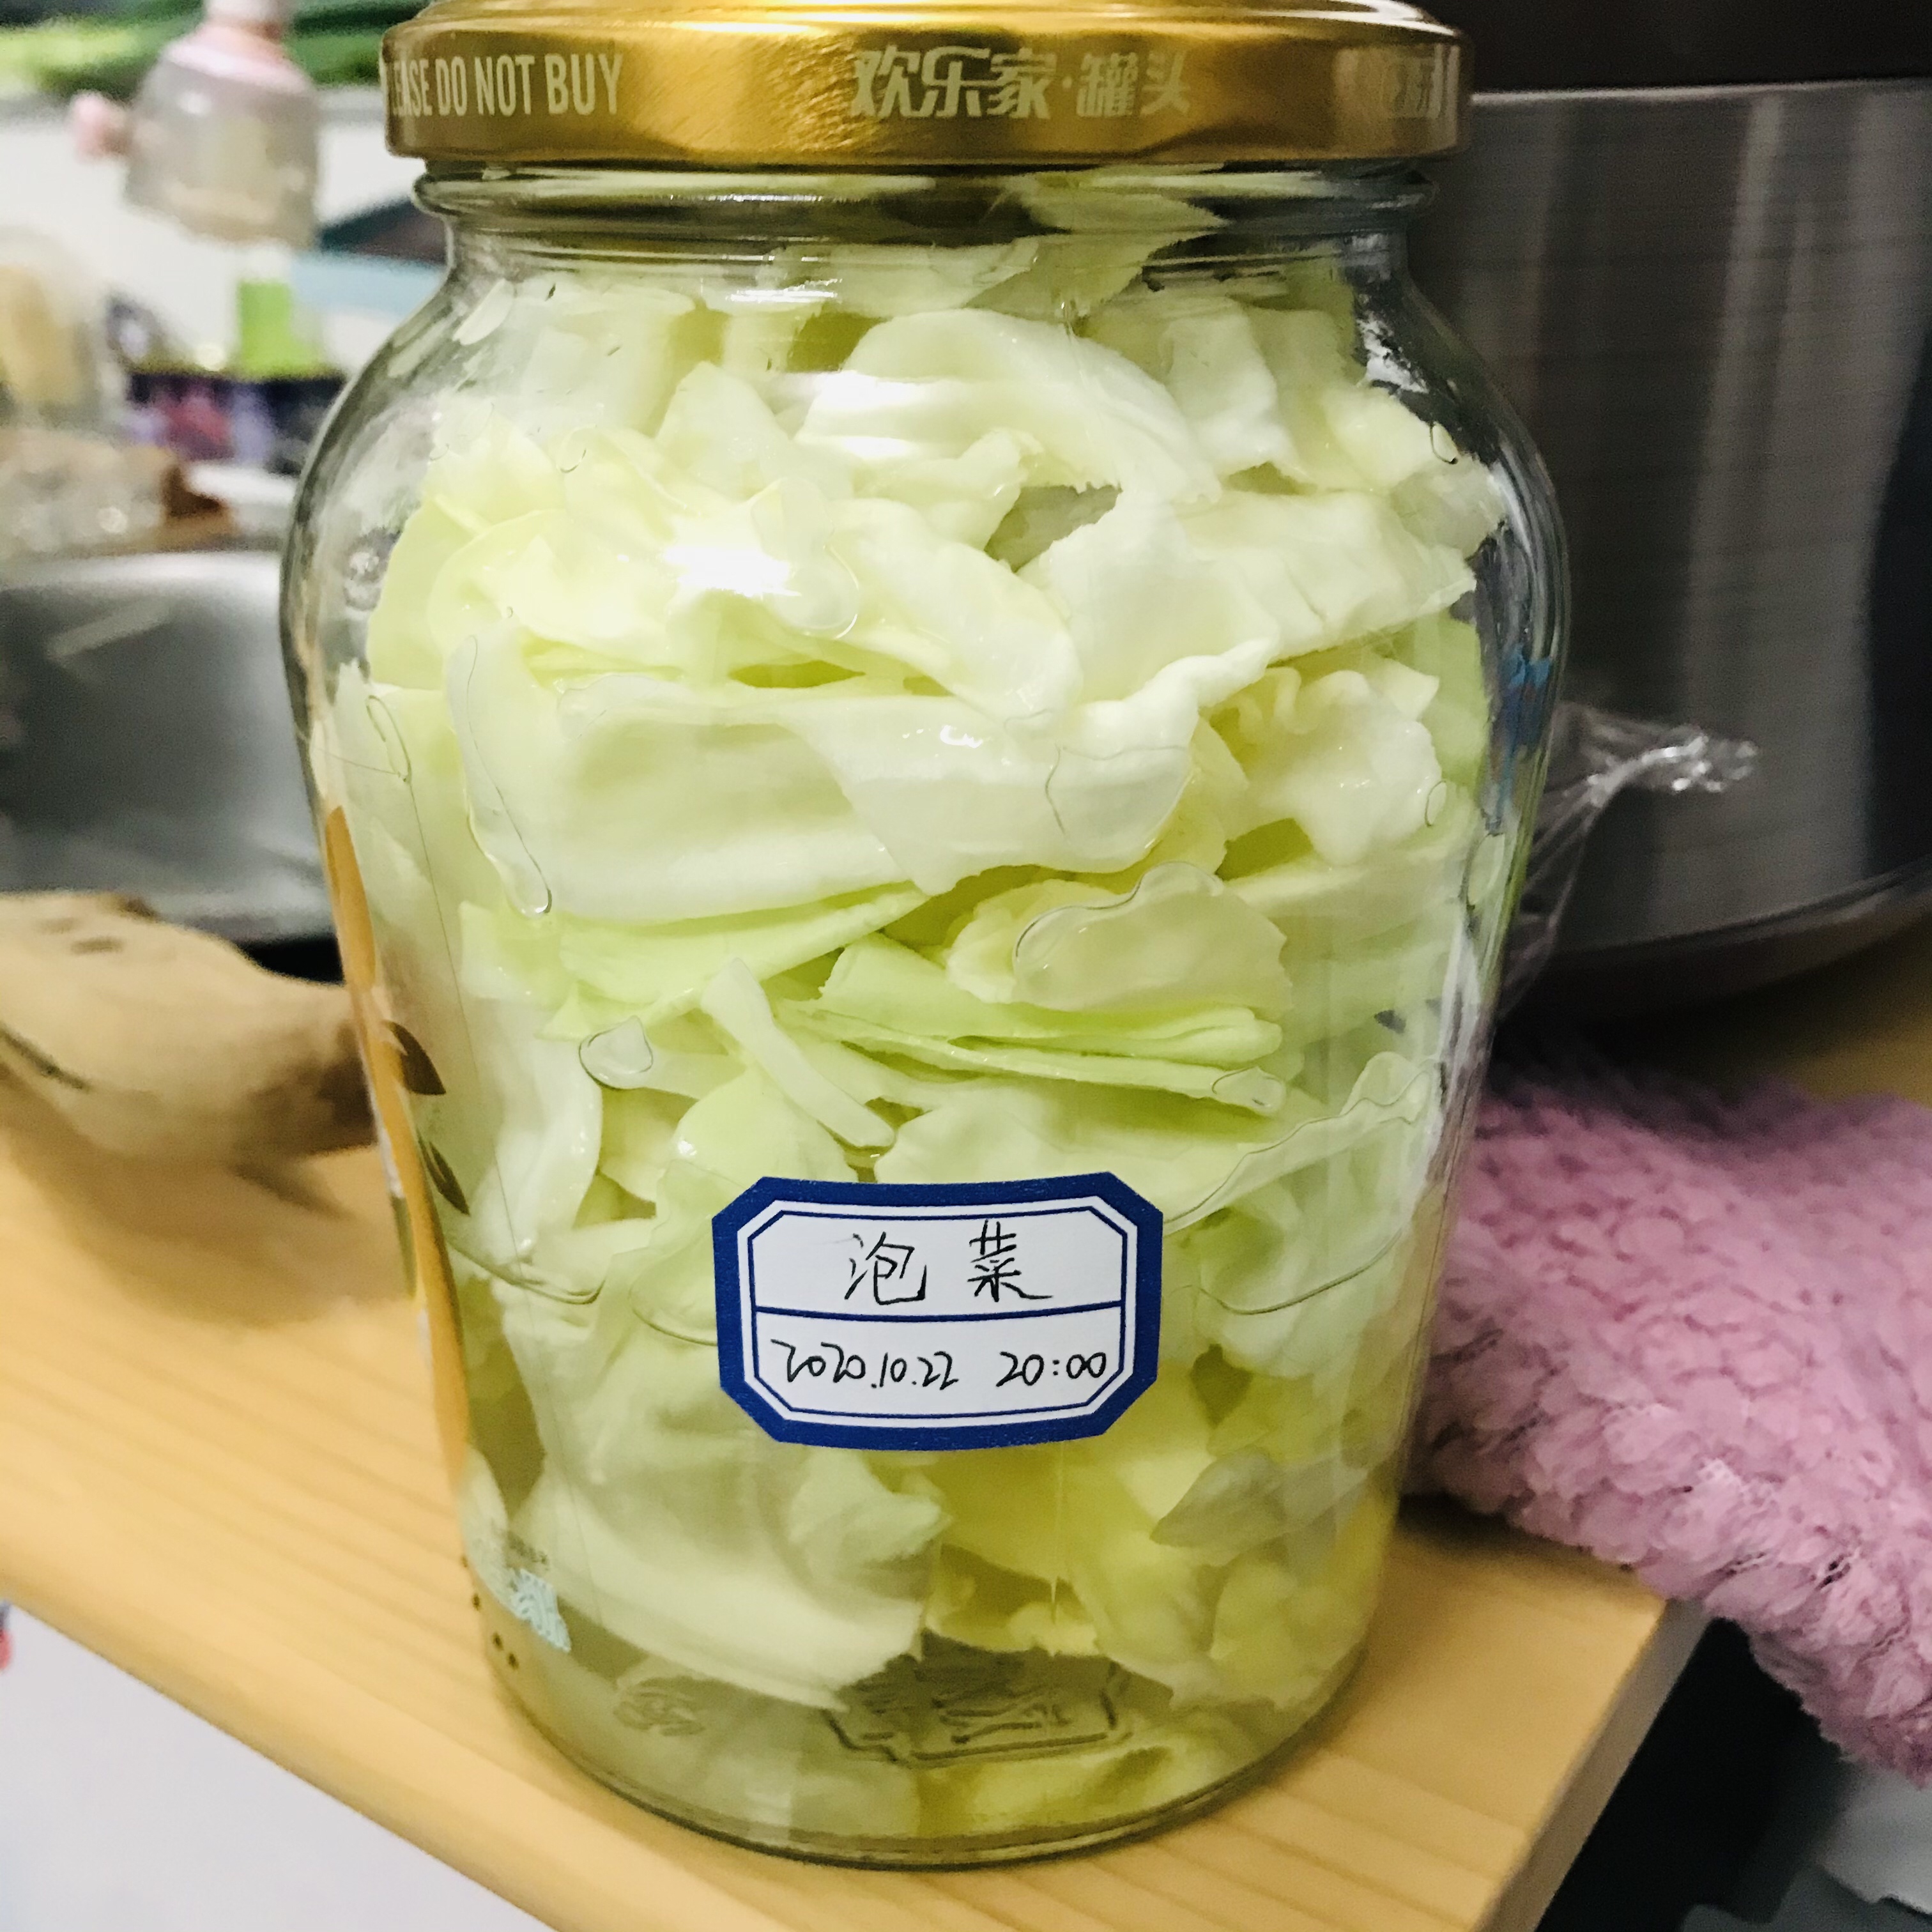 10分钟速成新疆泡菜之莲花白的做法